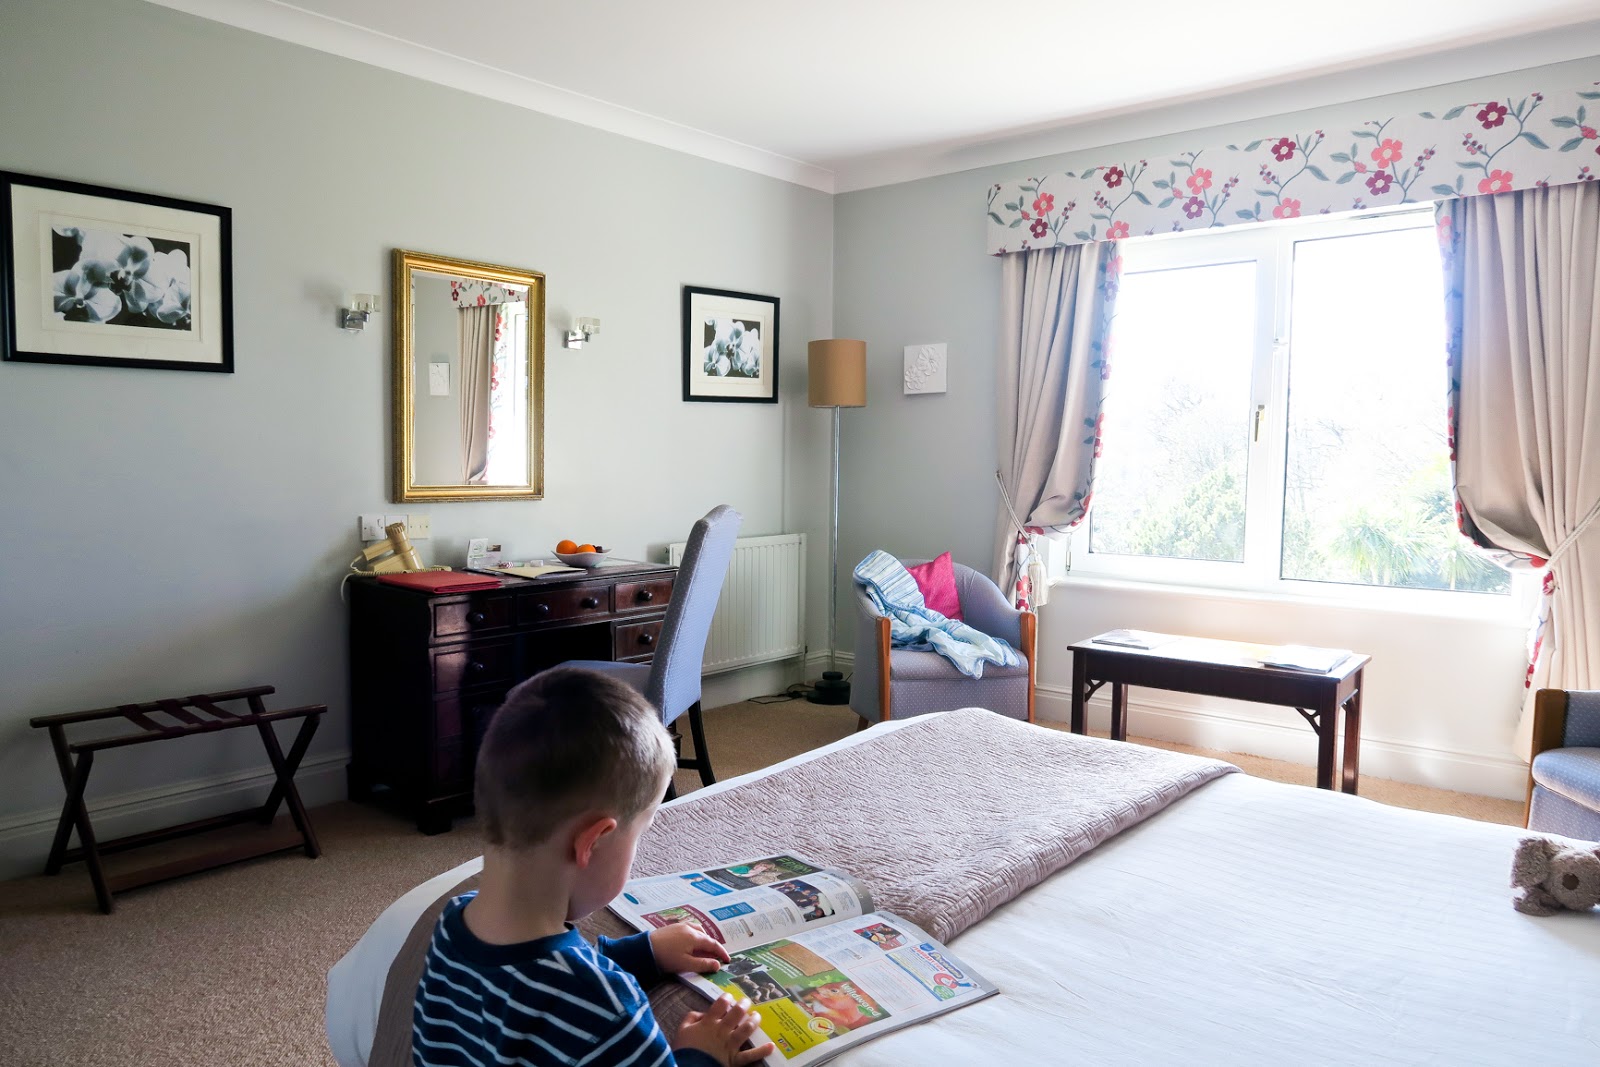 The moorland garden hotel, family uk breaks, devon breaks, hotels in devon